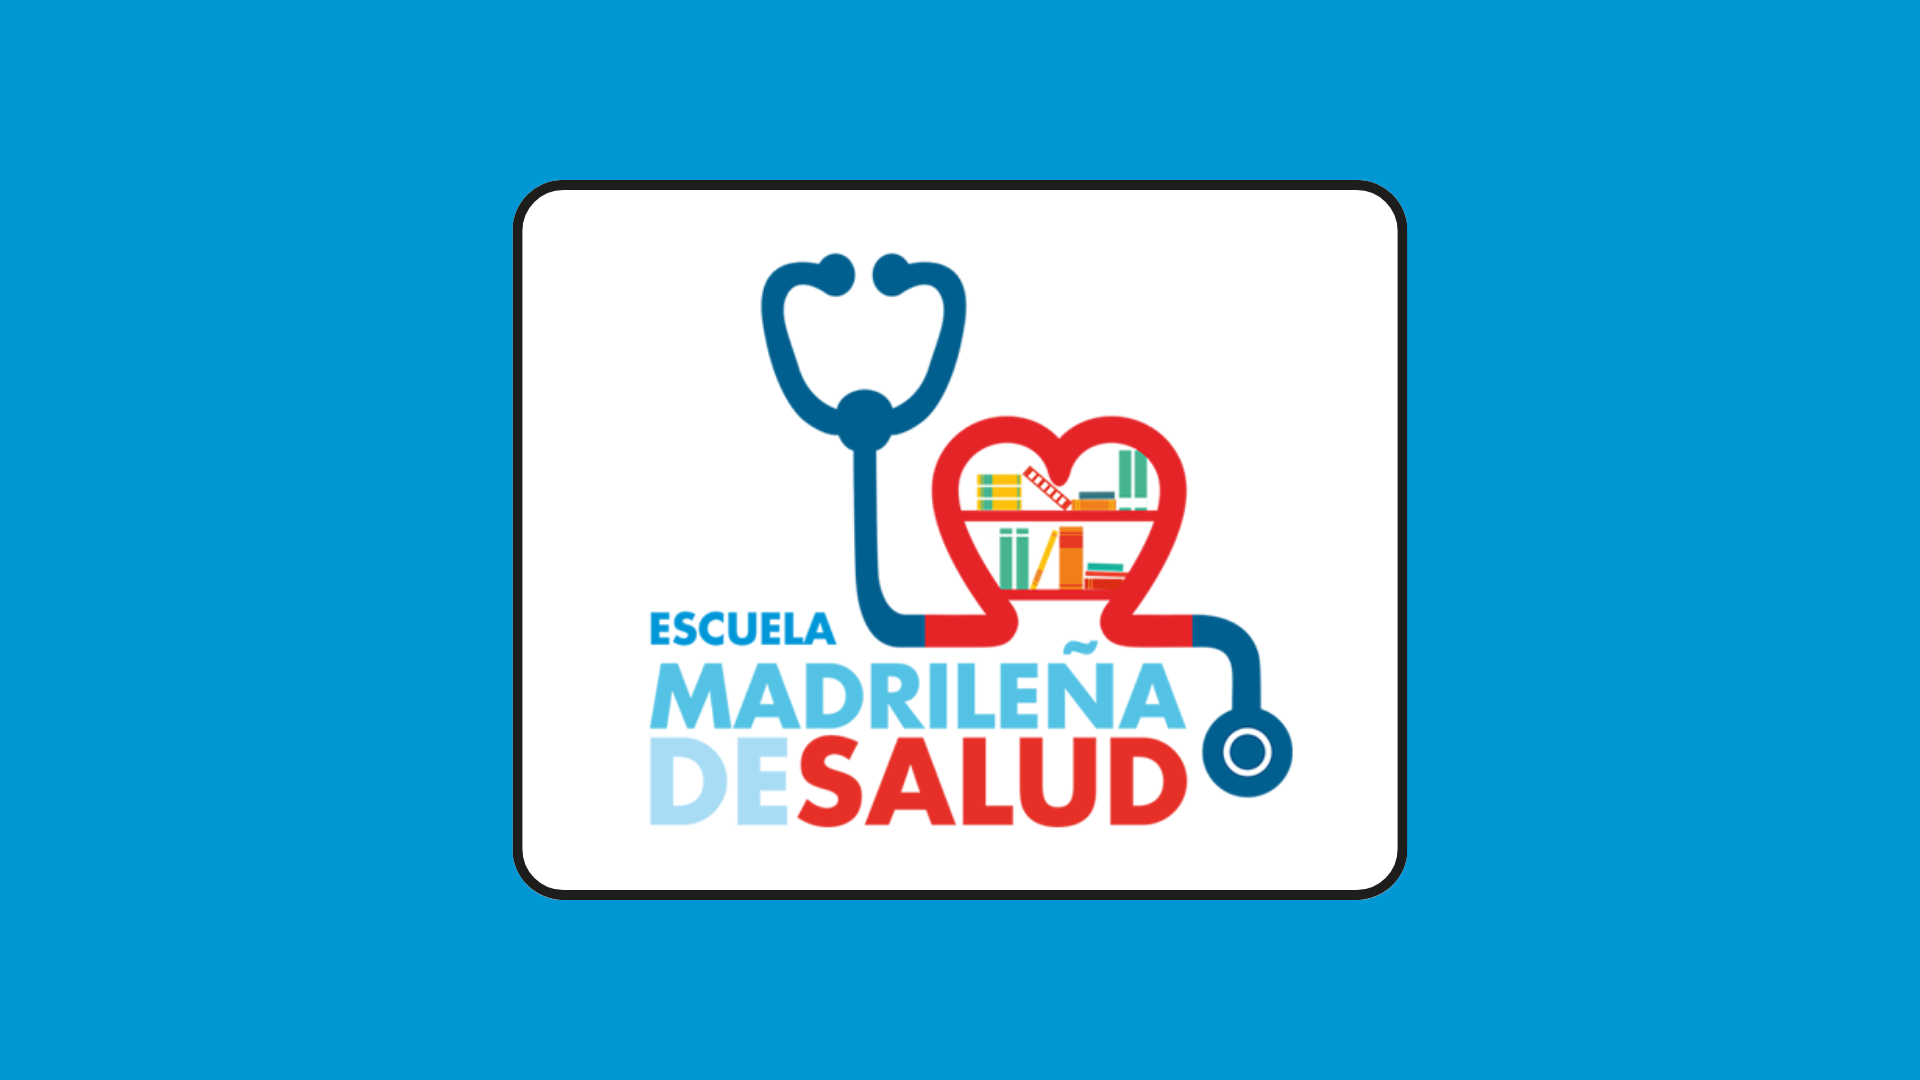 Comunidad de Madrid 1 Consejería de Sanidad - Escuela Madrileña de Salud 